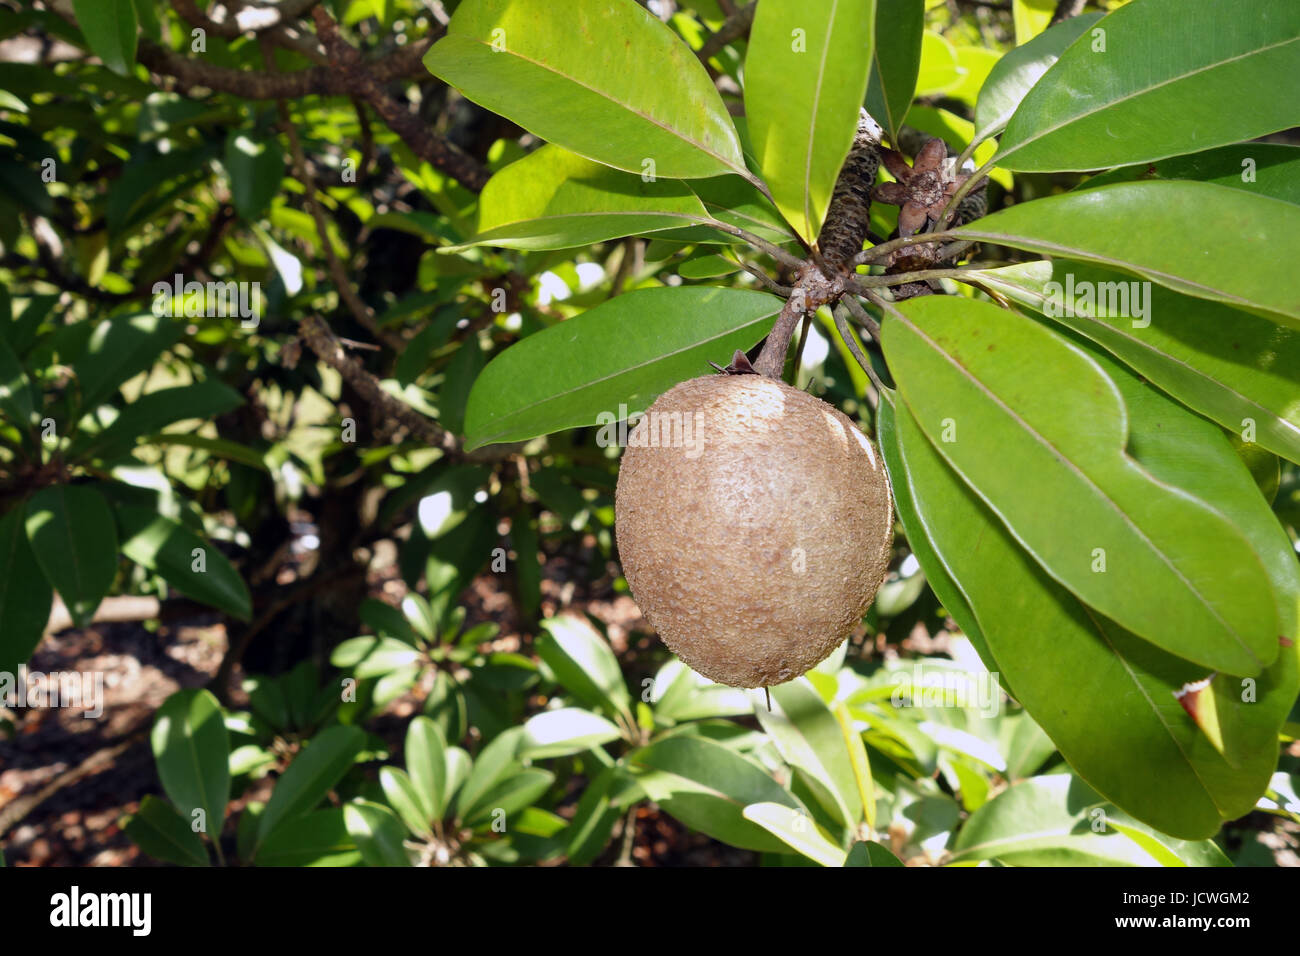 Sapodilla (Manilkara zapota) fruit on tree Stock Photo